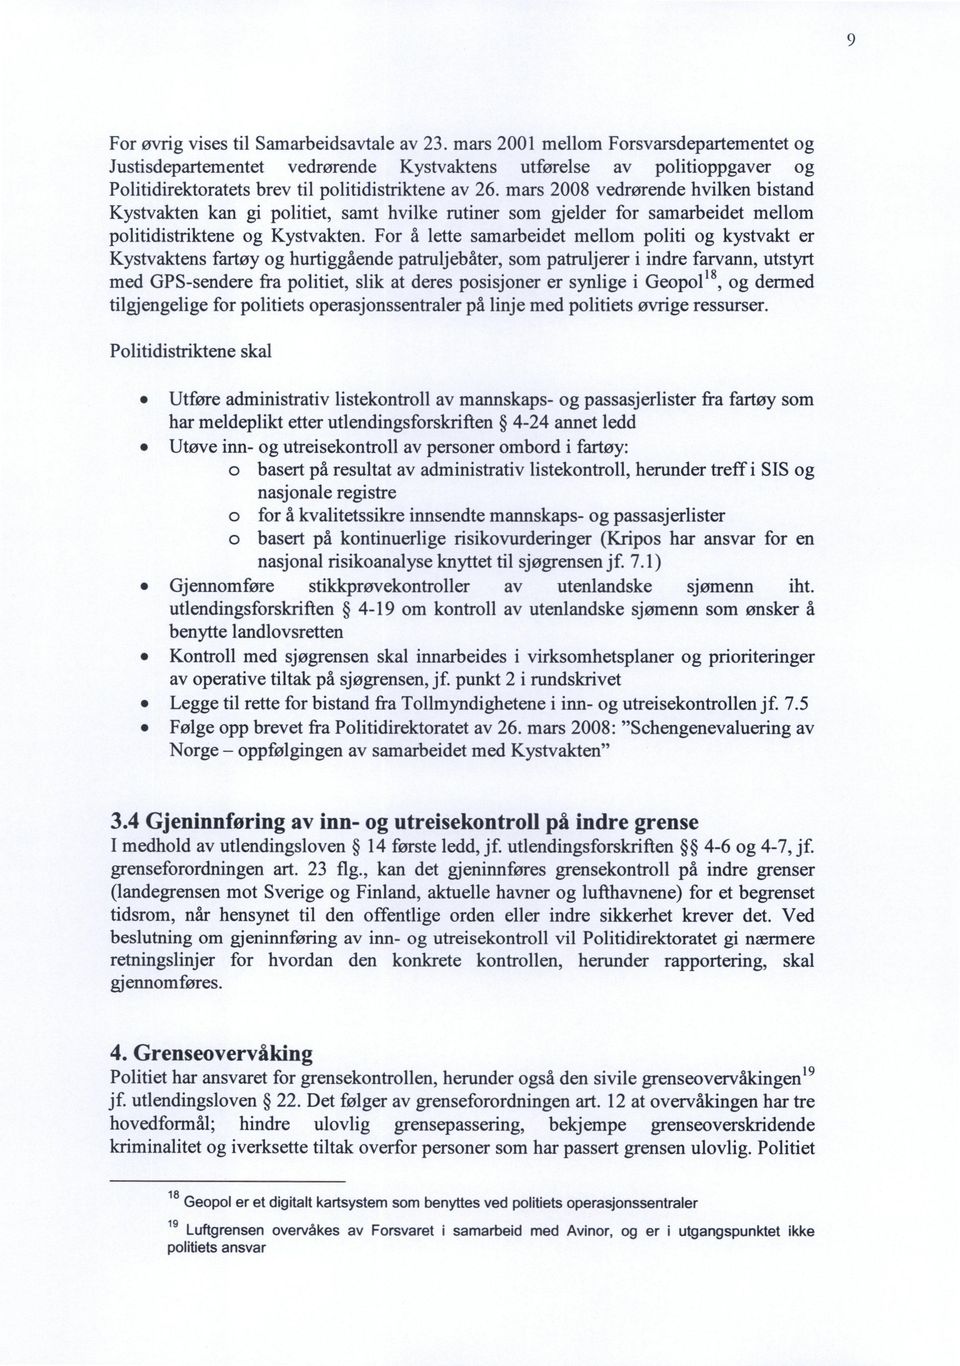 mars 2008 vedrørende hvilken bistand Kystvakten kan gi politiet, samt hvilke rutiner som gjelder for samarbeidet mellom politidistriktene og Kystvakten.